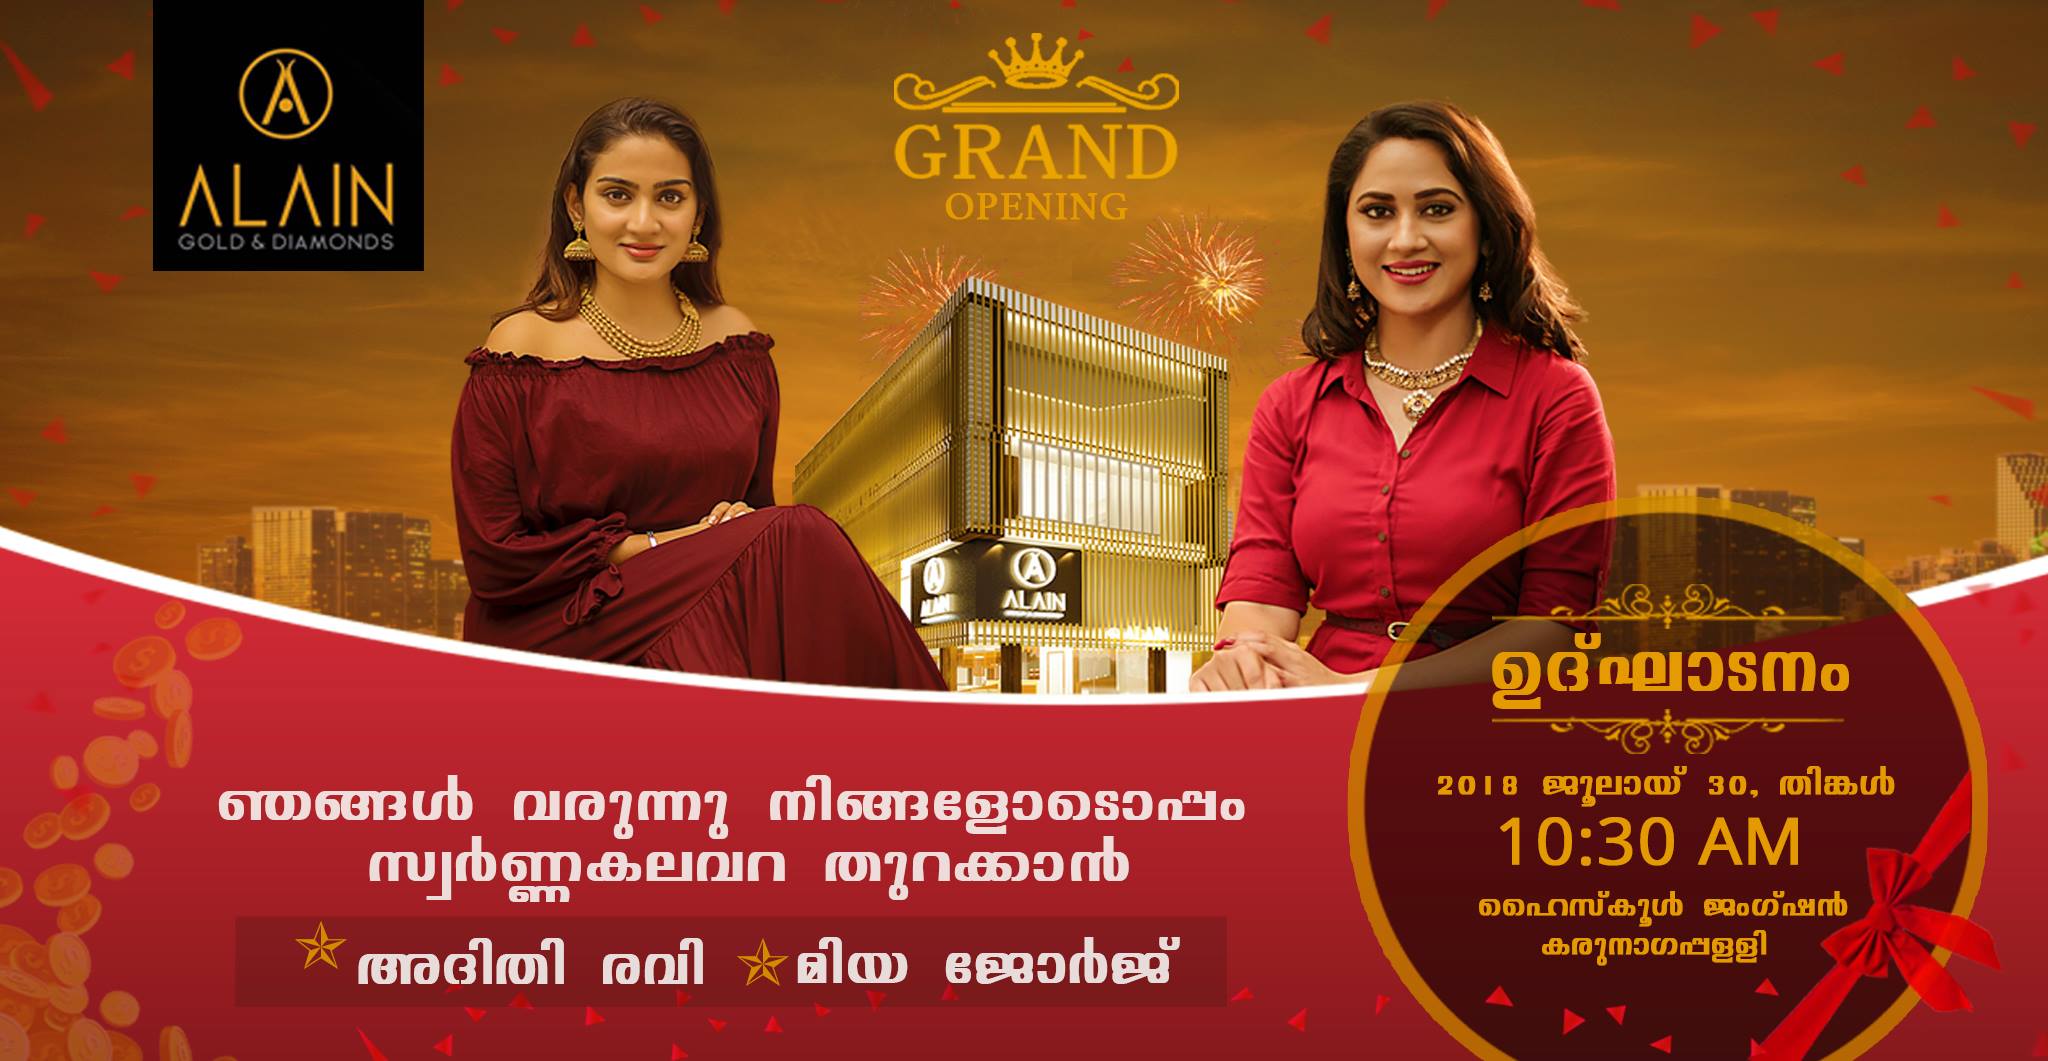 ALAIN GOLD& Diamonds Grand Opening at Karunagapilli